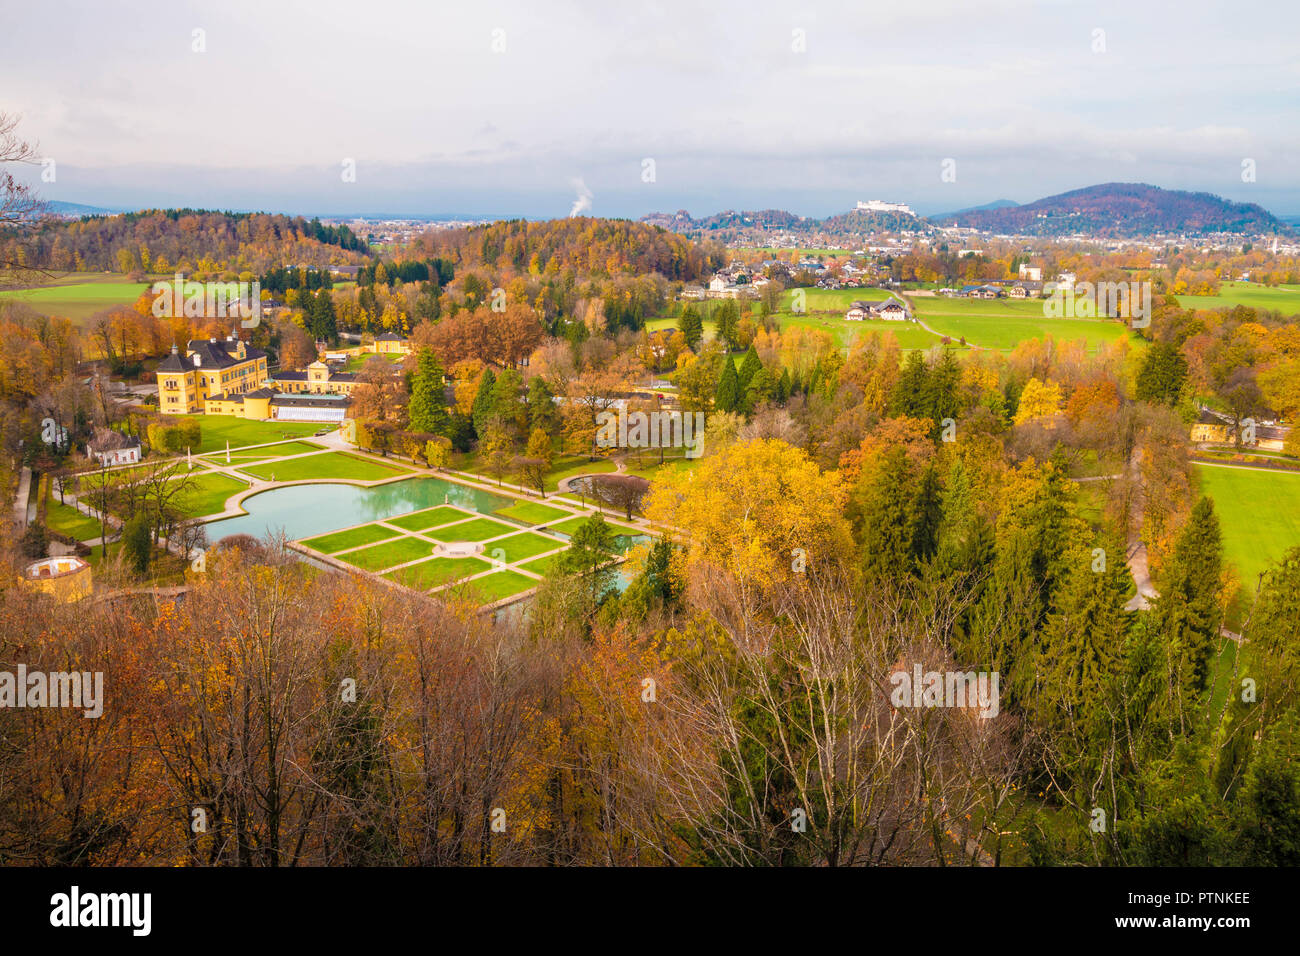 Vista panoramica del castello di Hellbrunn (Schloss Hellbrunn) e del parco in una bella giornata d'autunno. Il castello di Hohensalzburg visto sullo sfondo. Salisburgo, Austria. Foto Stock